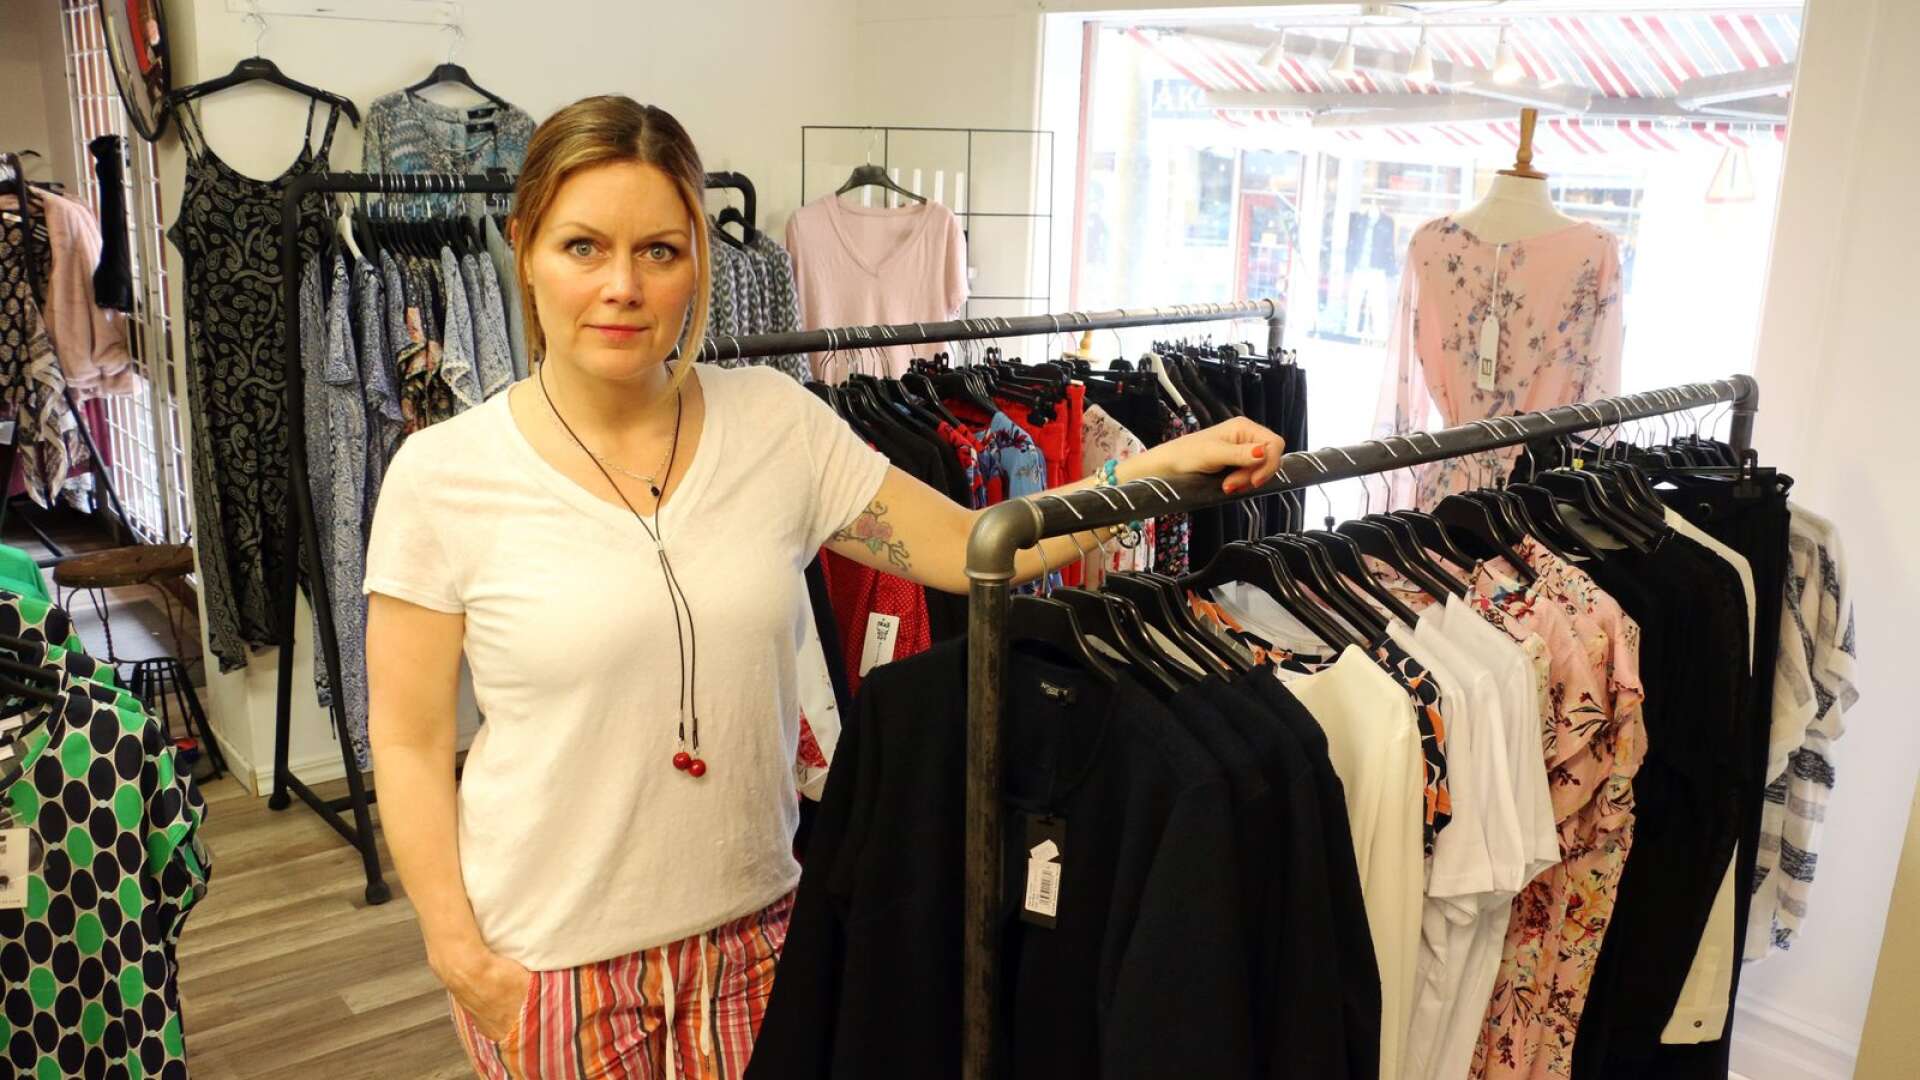 Dee-Anna Stolpe driver butiken Dee-Annas kläder i Filipstad. Som egenföretagare får hon jobba många timmar varje vecka.